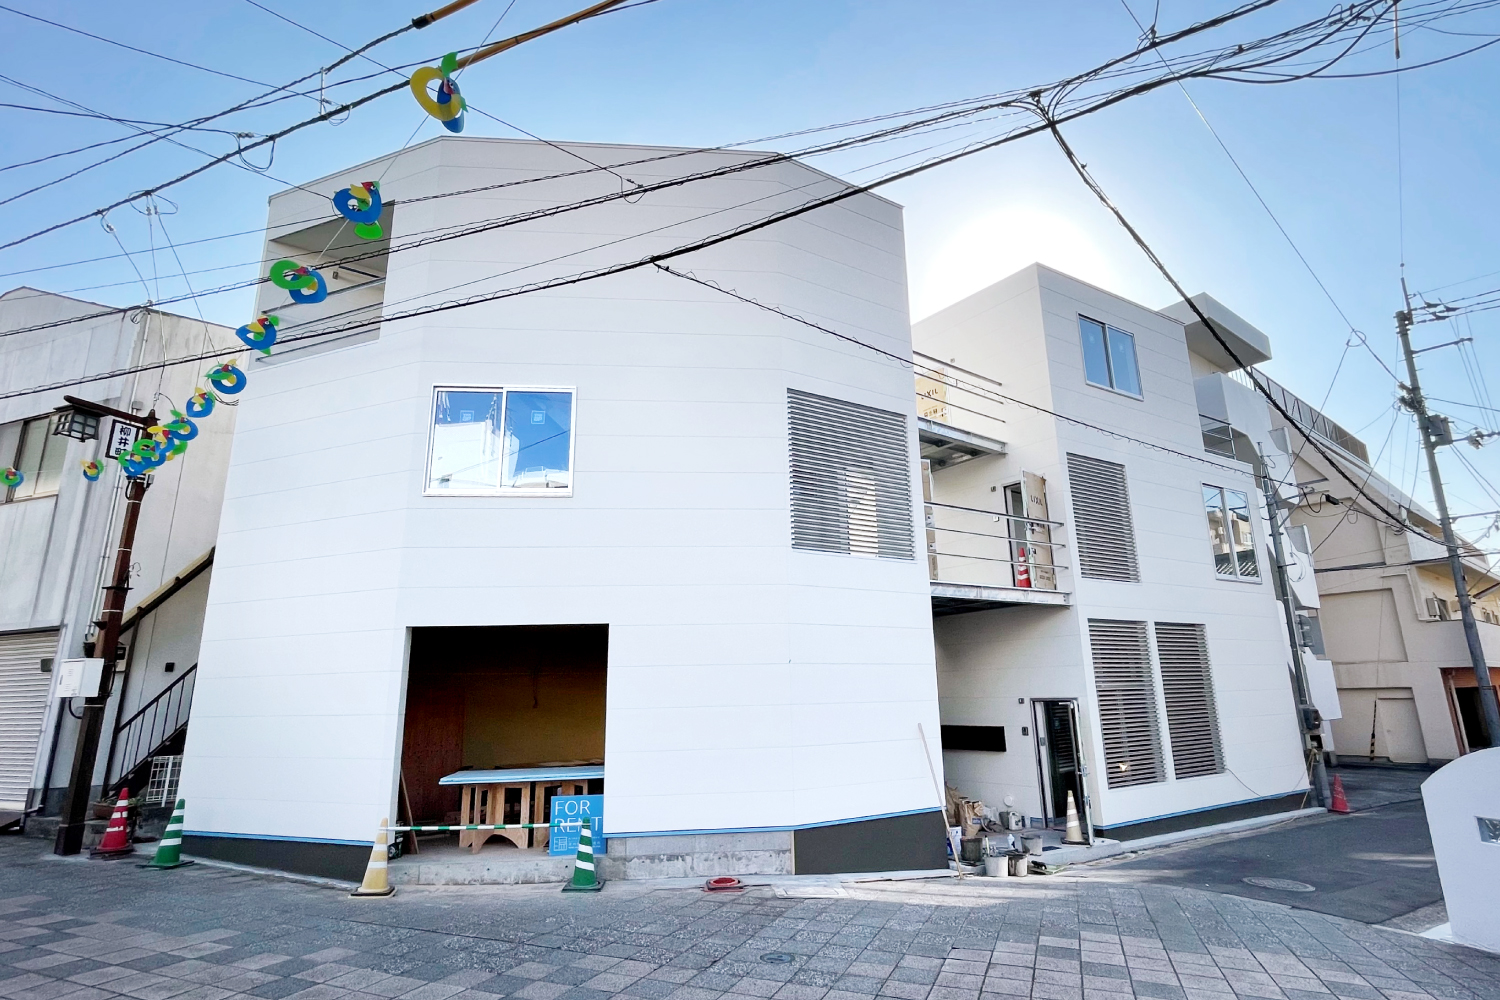 湯川住み方研究所新築プロジェクト Vol.4/家ではなく、まちに住む。第2弾OPEN HOUSE/2022.1.22SAT~1.23SUN